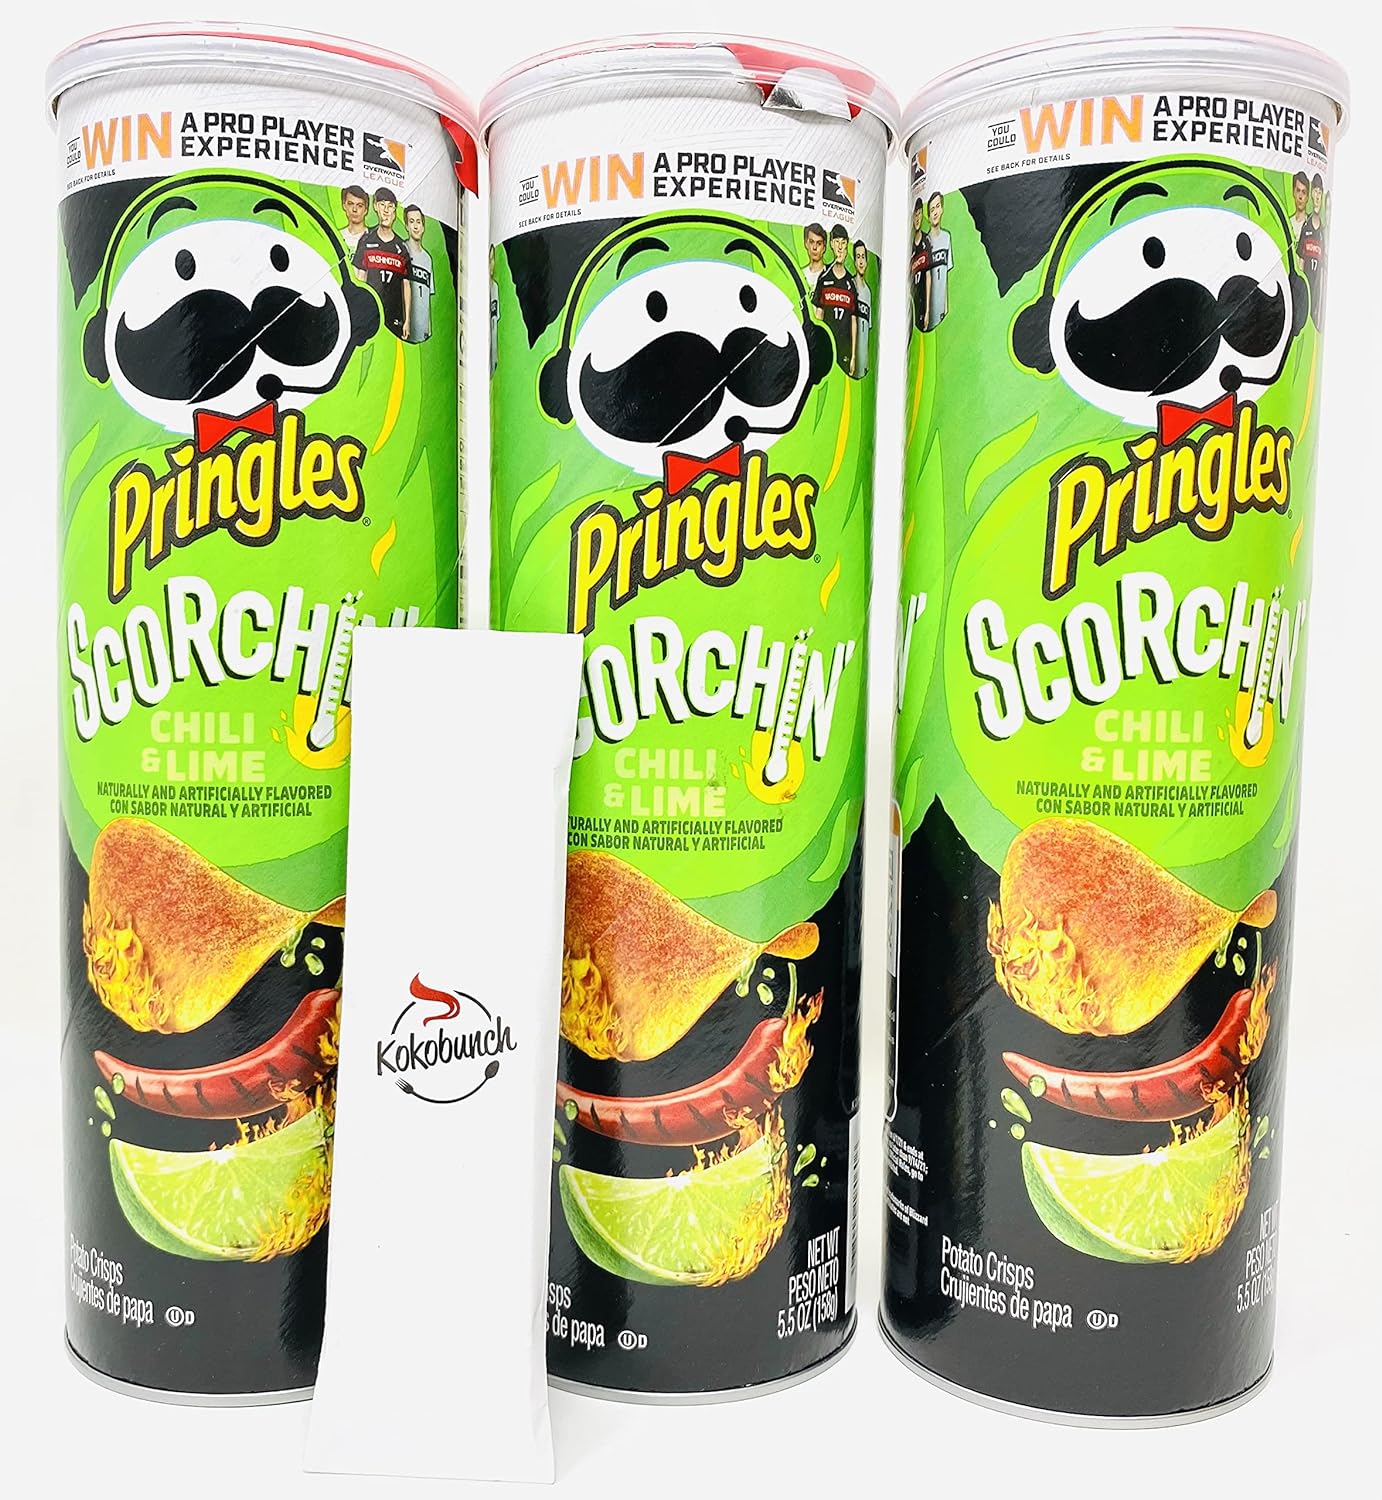 Pringles Scorchin' Snack Pack Potato Chip - Hot Chili & Lime Potato ...